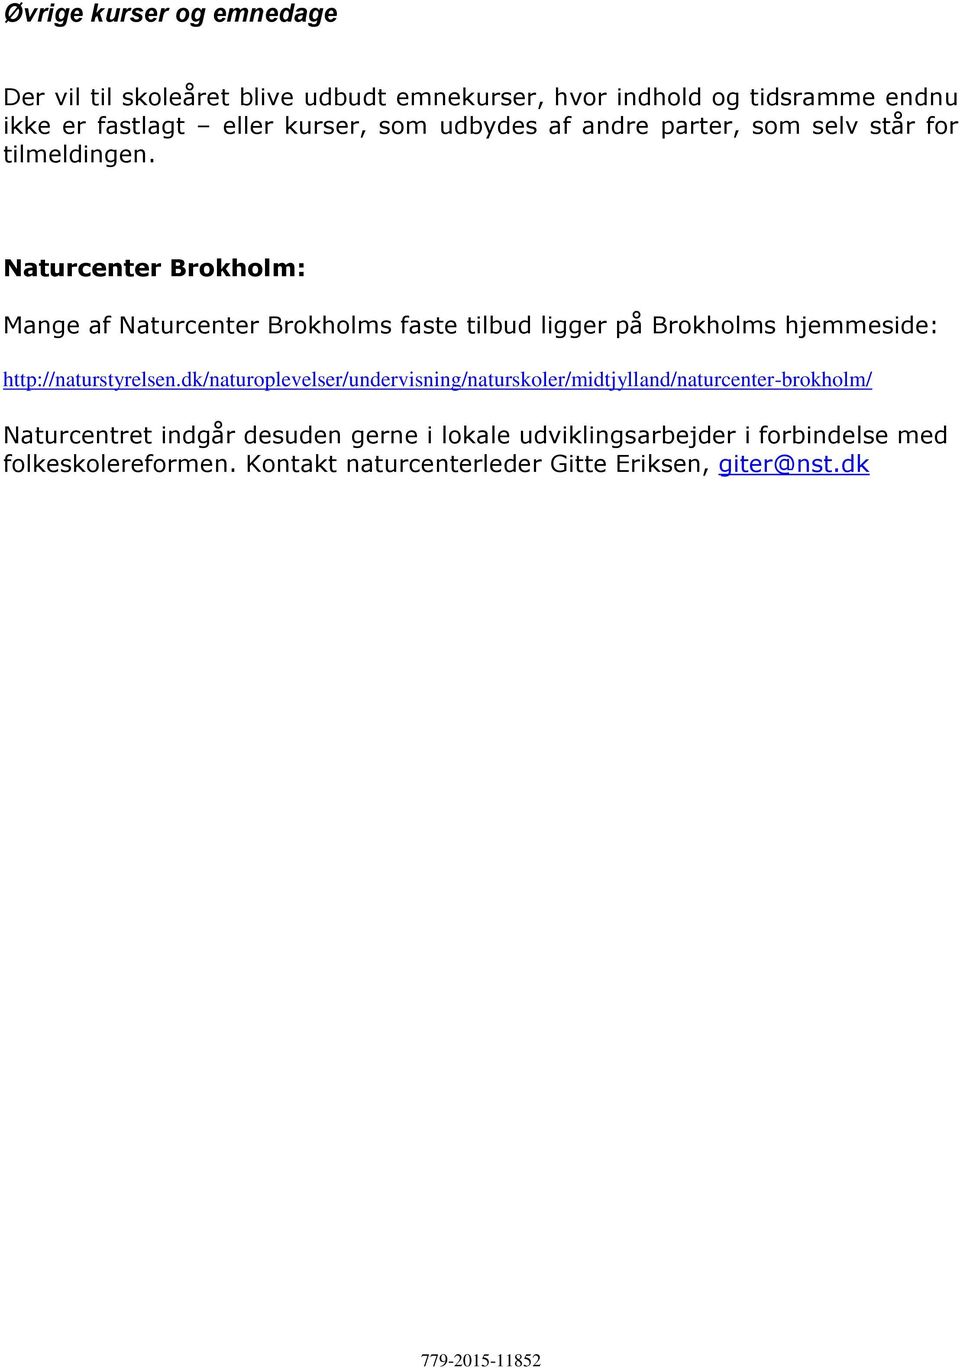 Naturcenter Brokholm: Mange af Naturcenter Brokholms faste tilbud ligger på Brokholms hjemmeside: http://naturstyrelsen.